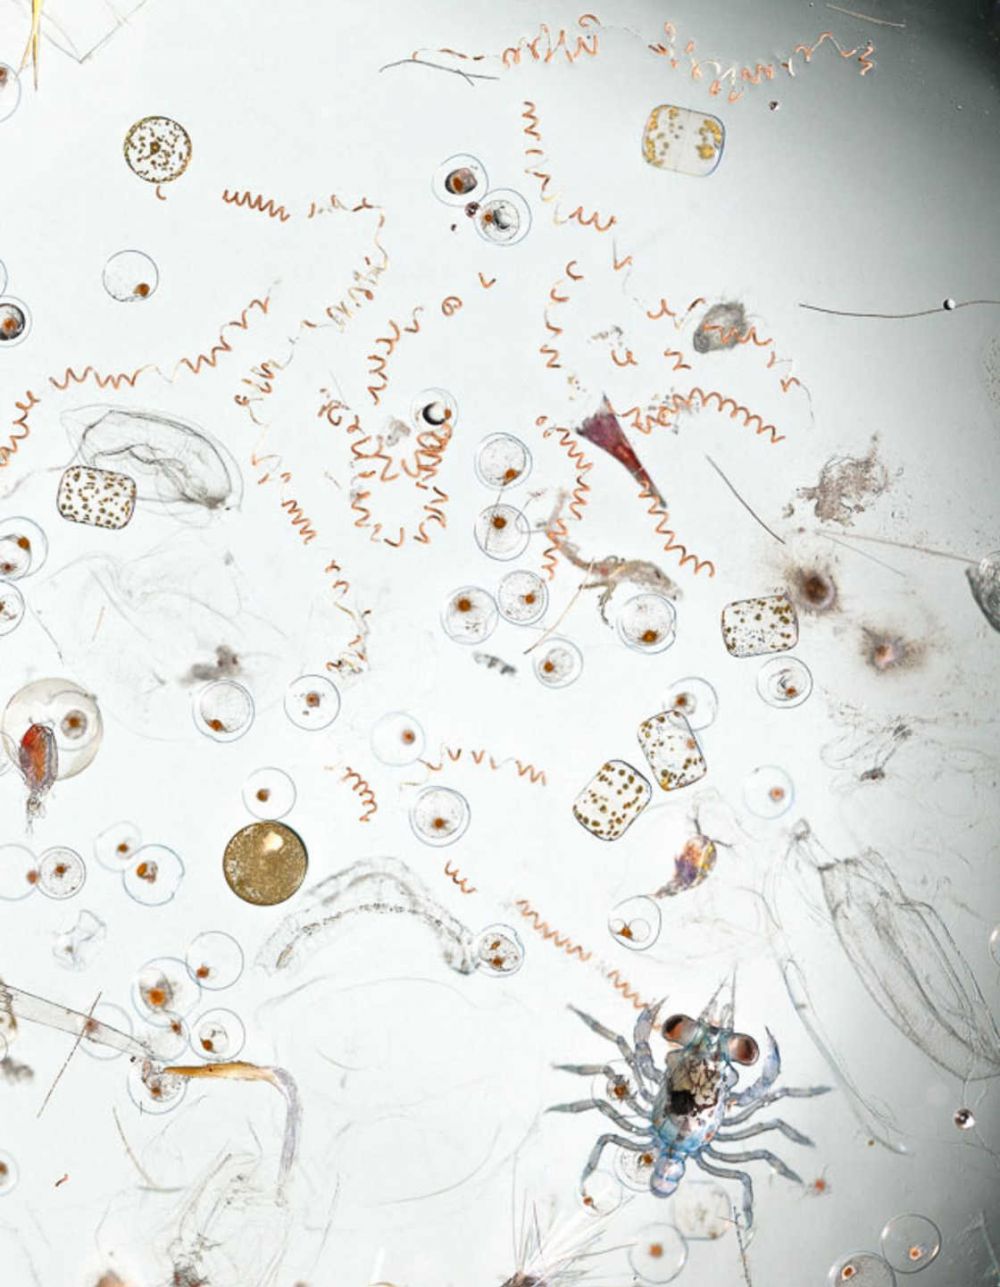 Fotografer ini buktikan ada puluhan makhluk hidup di setetes air laut